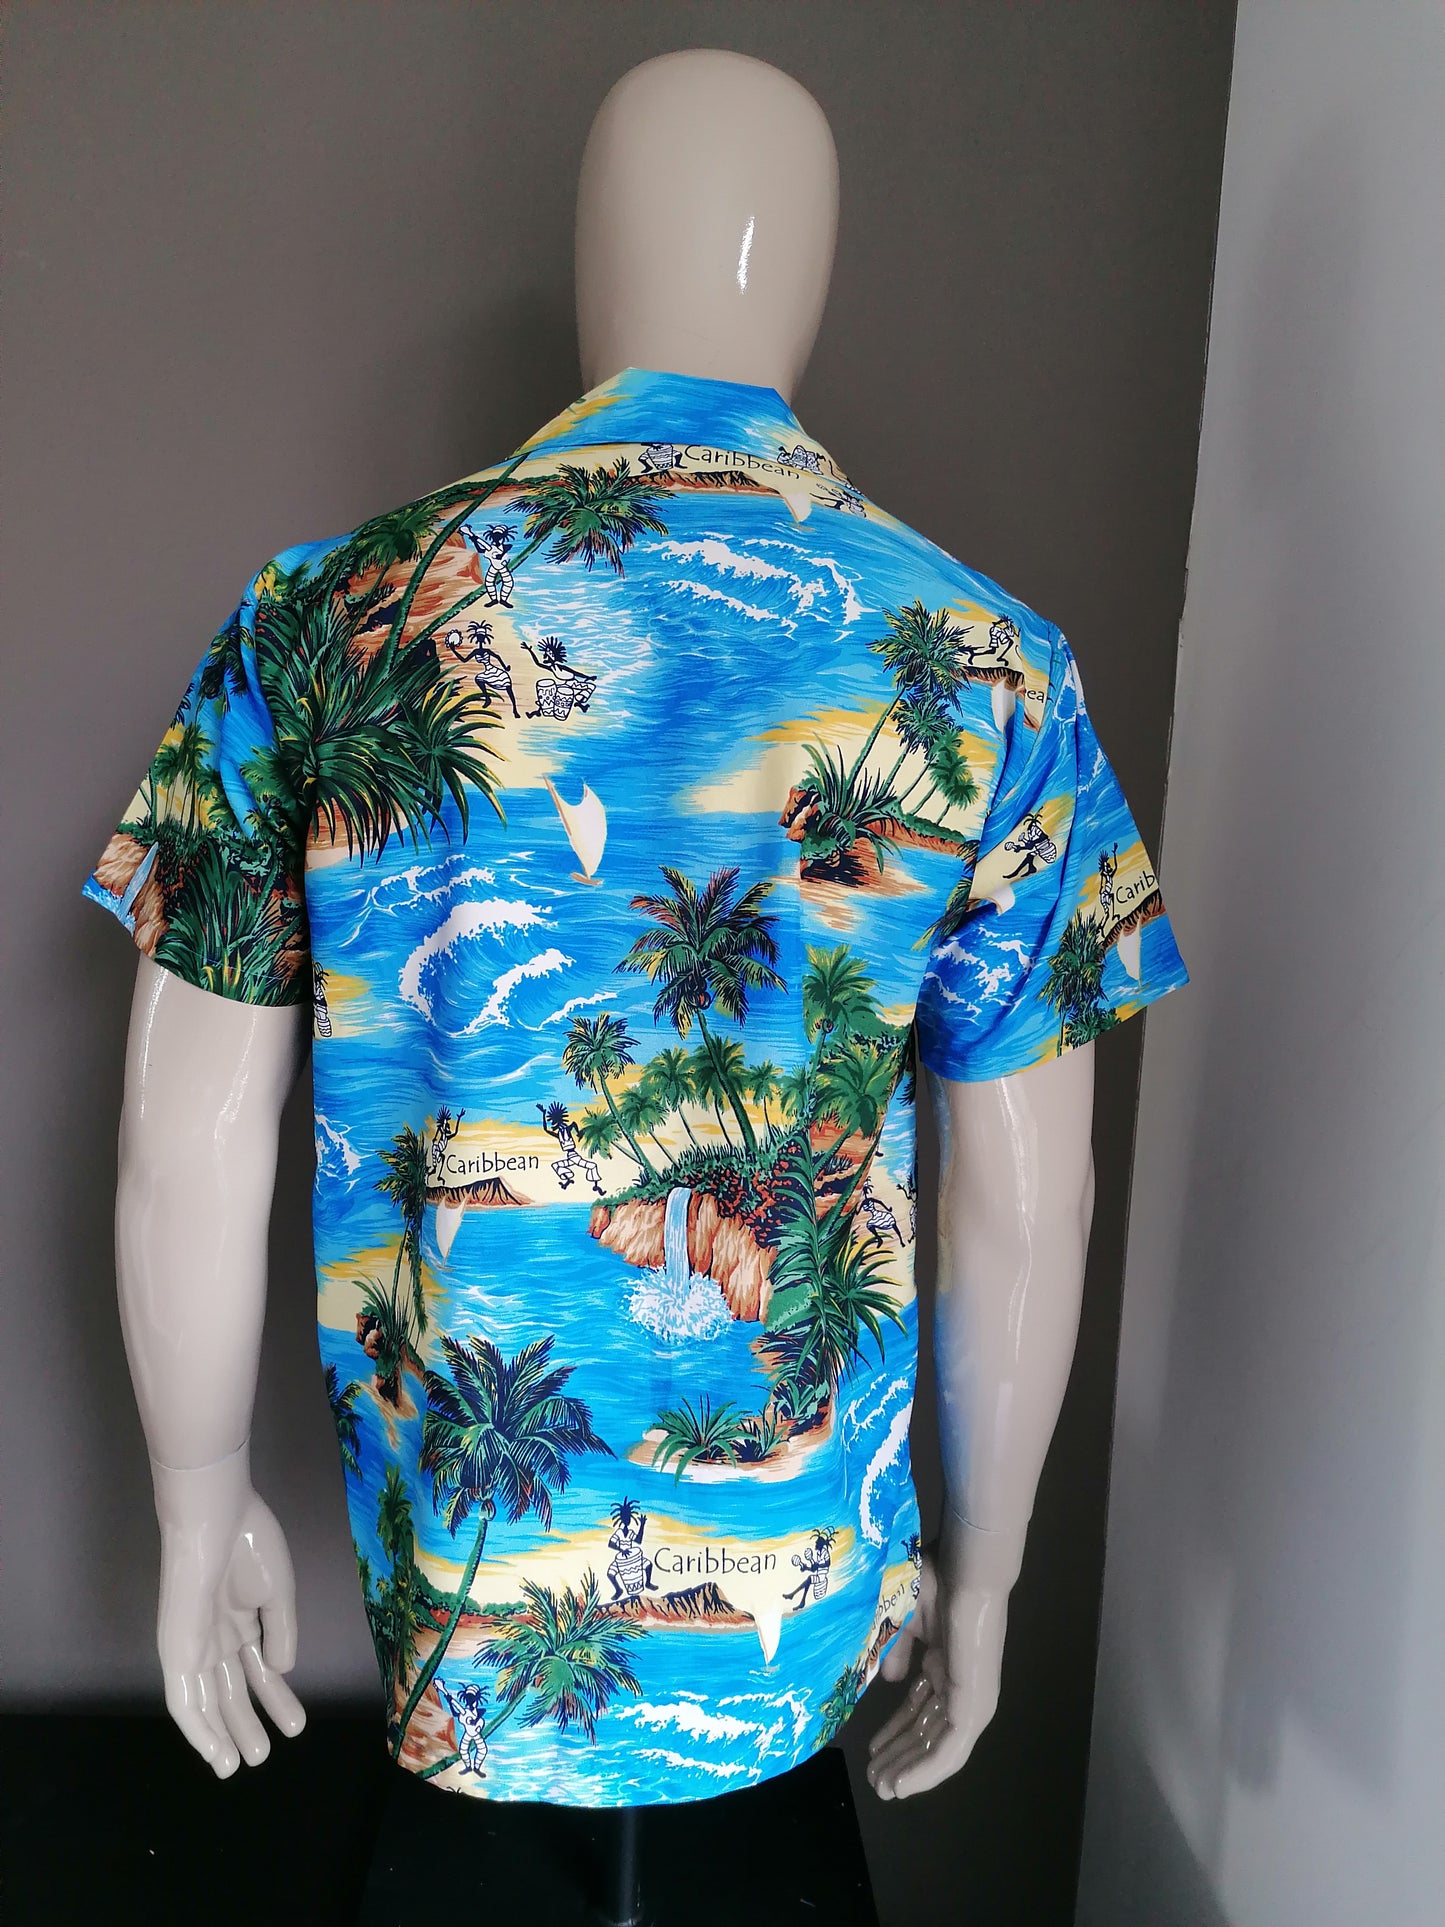 Rima Vintage Hawaii imprimir camisa de manga corta. Impresión amarilla verde azul. Talla M.